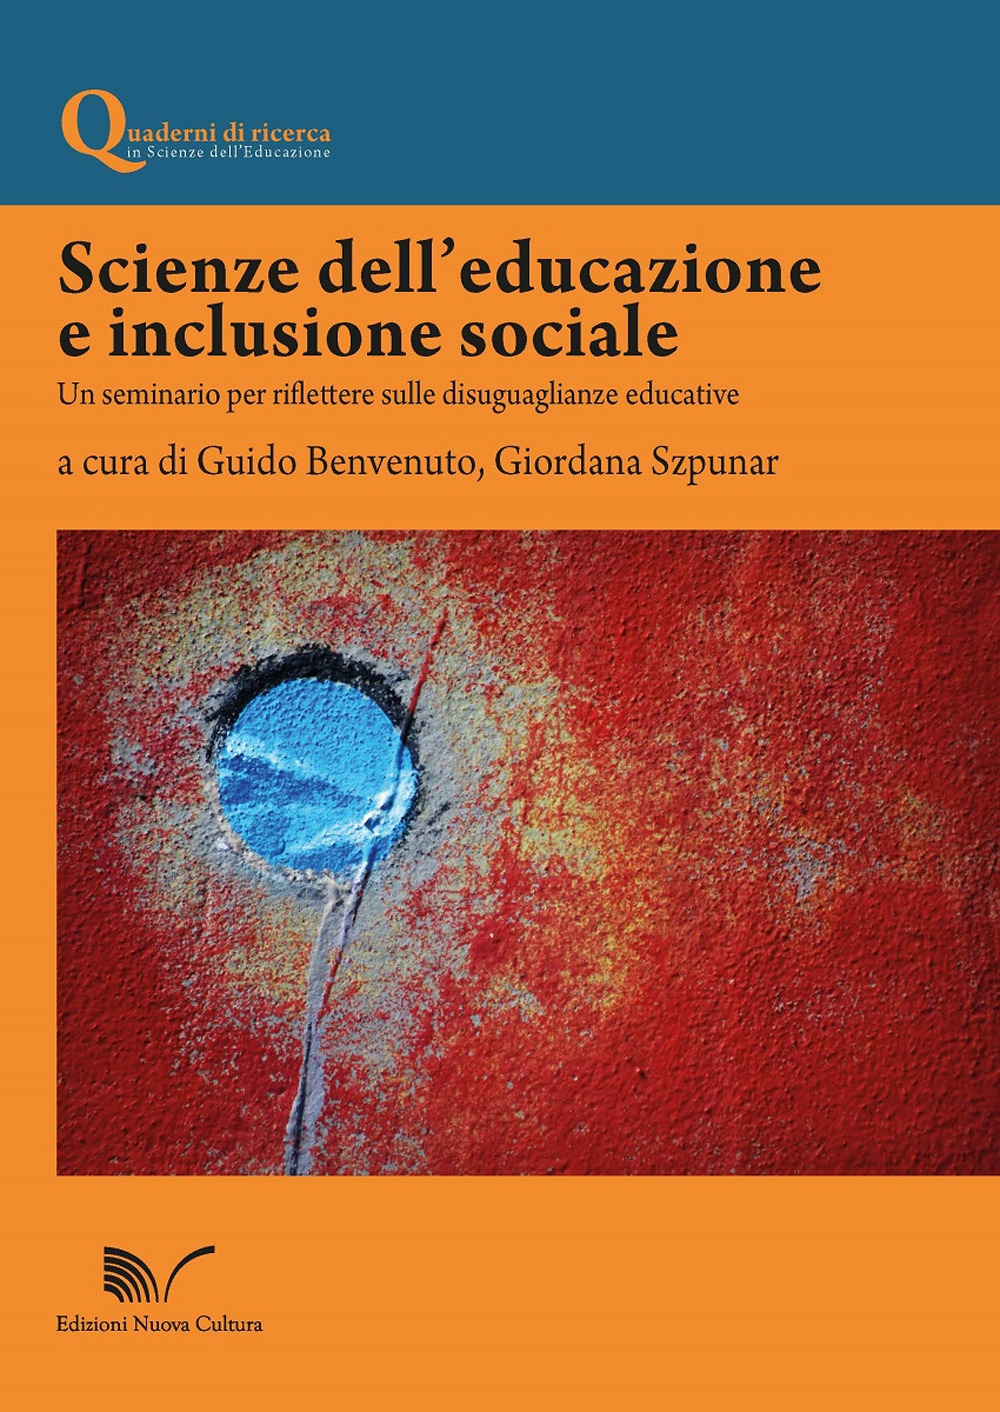 Scienze dell'educazione e inclusione sociale. Un seminario per riflettere sulle disuguaglianze educative